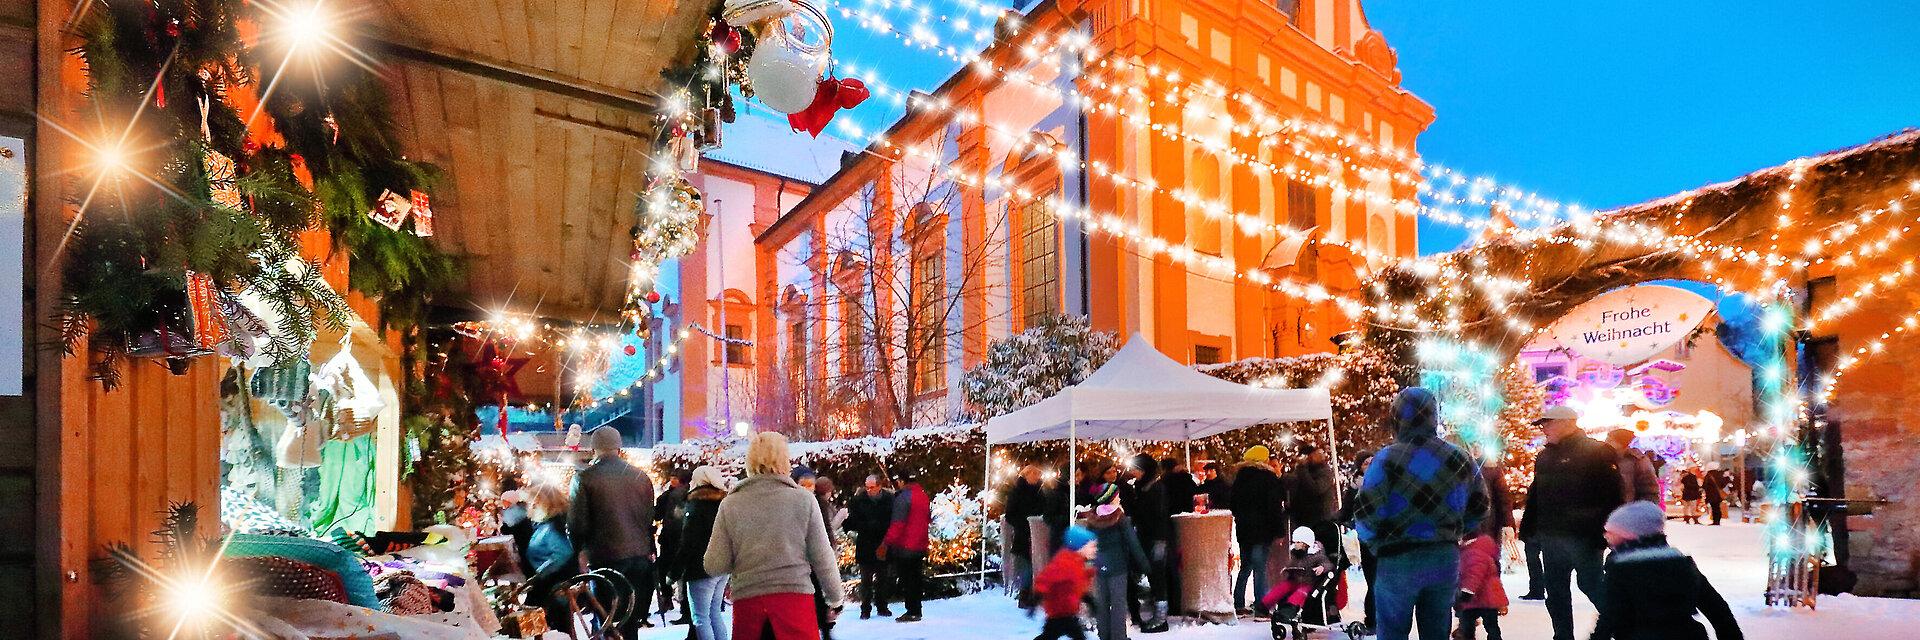 Veitshöchheimer Weihnachtsmarkt, im Vordergrund Buden und Besucher, im Hintergrund die illuminierte Kirche